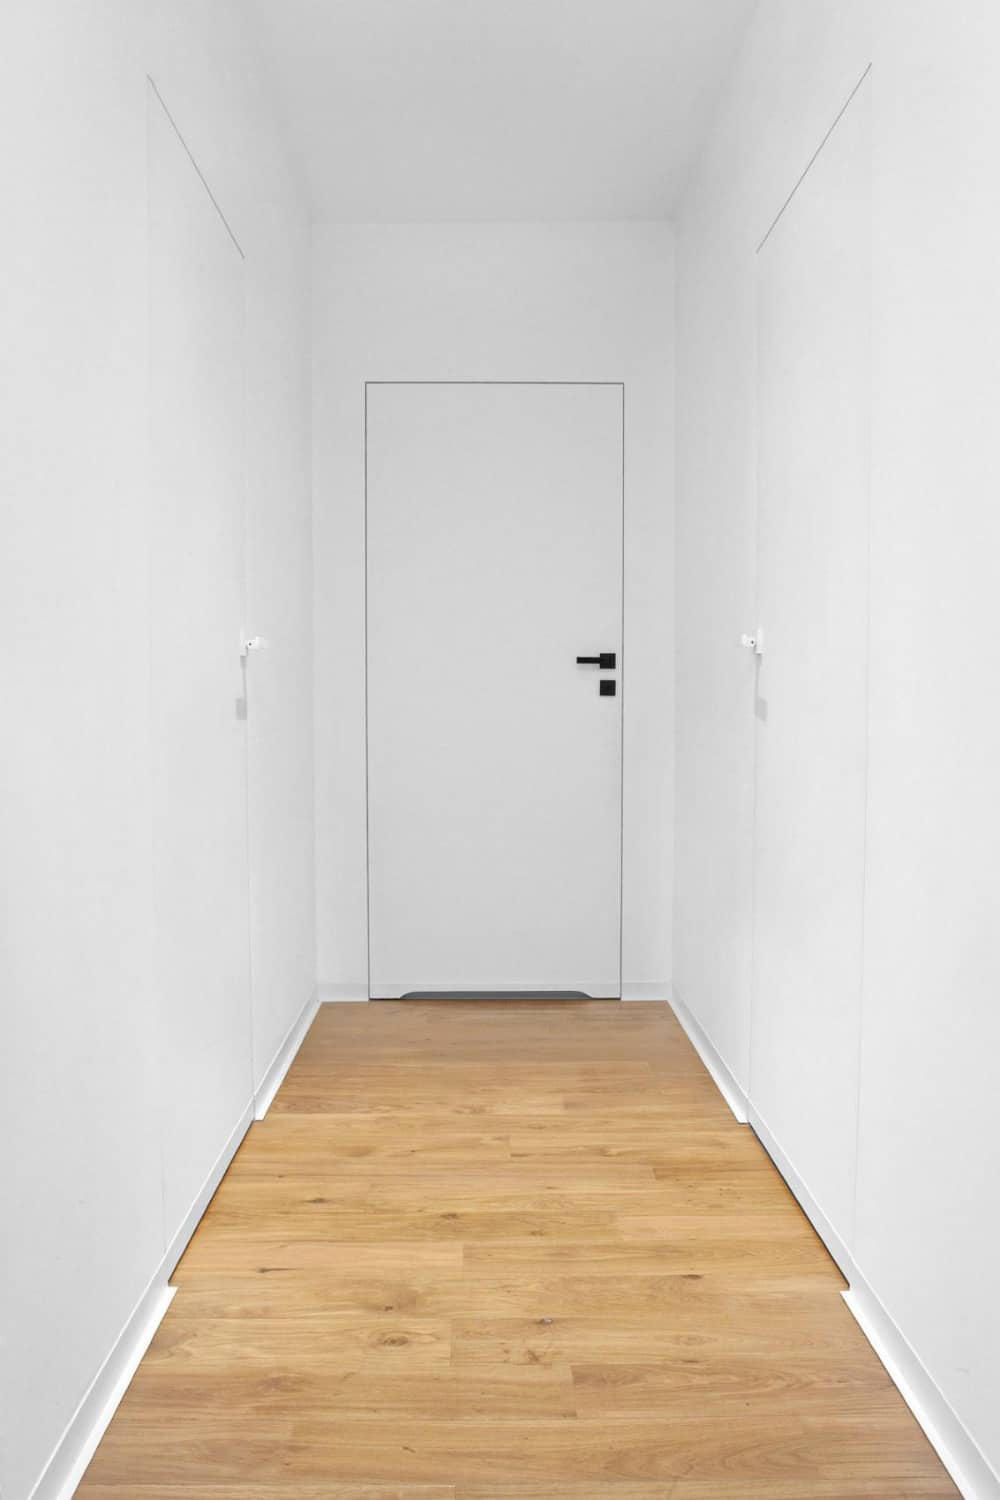 Minimal white hallway looks sterile